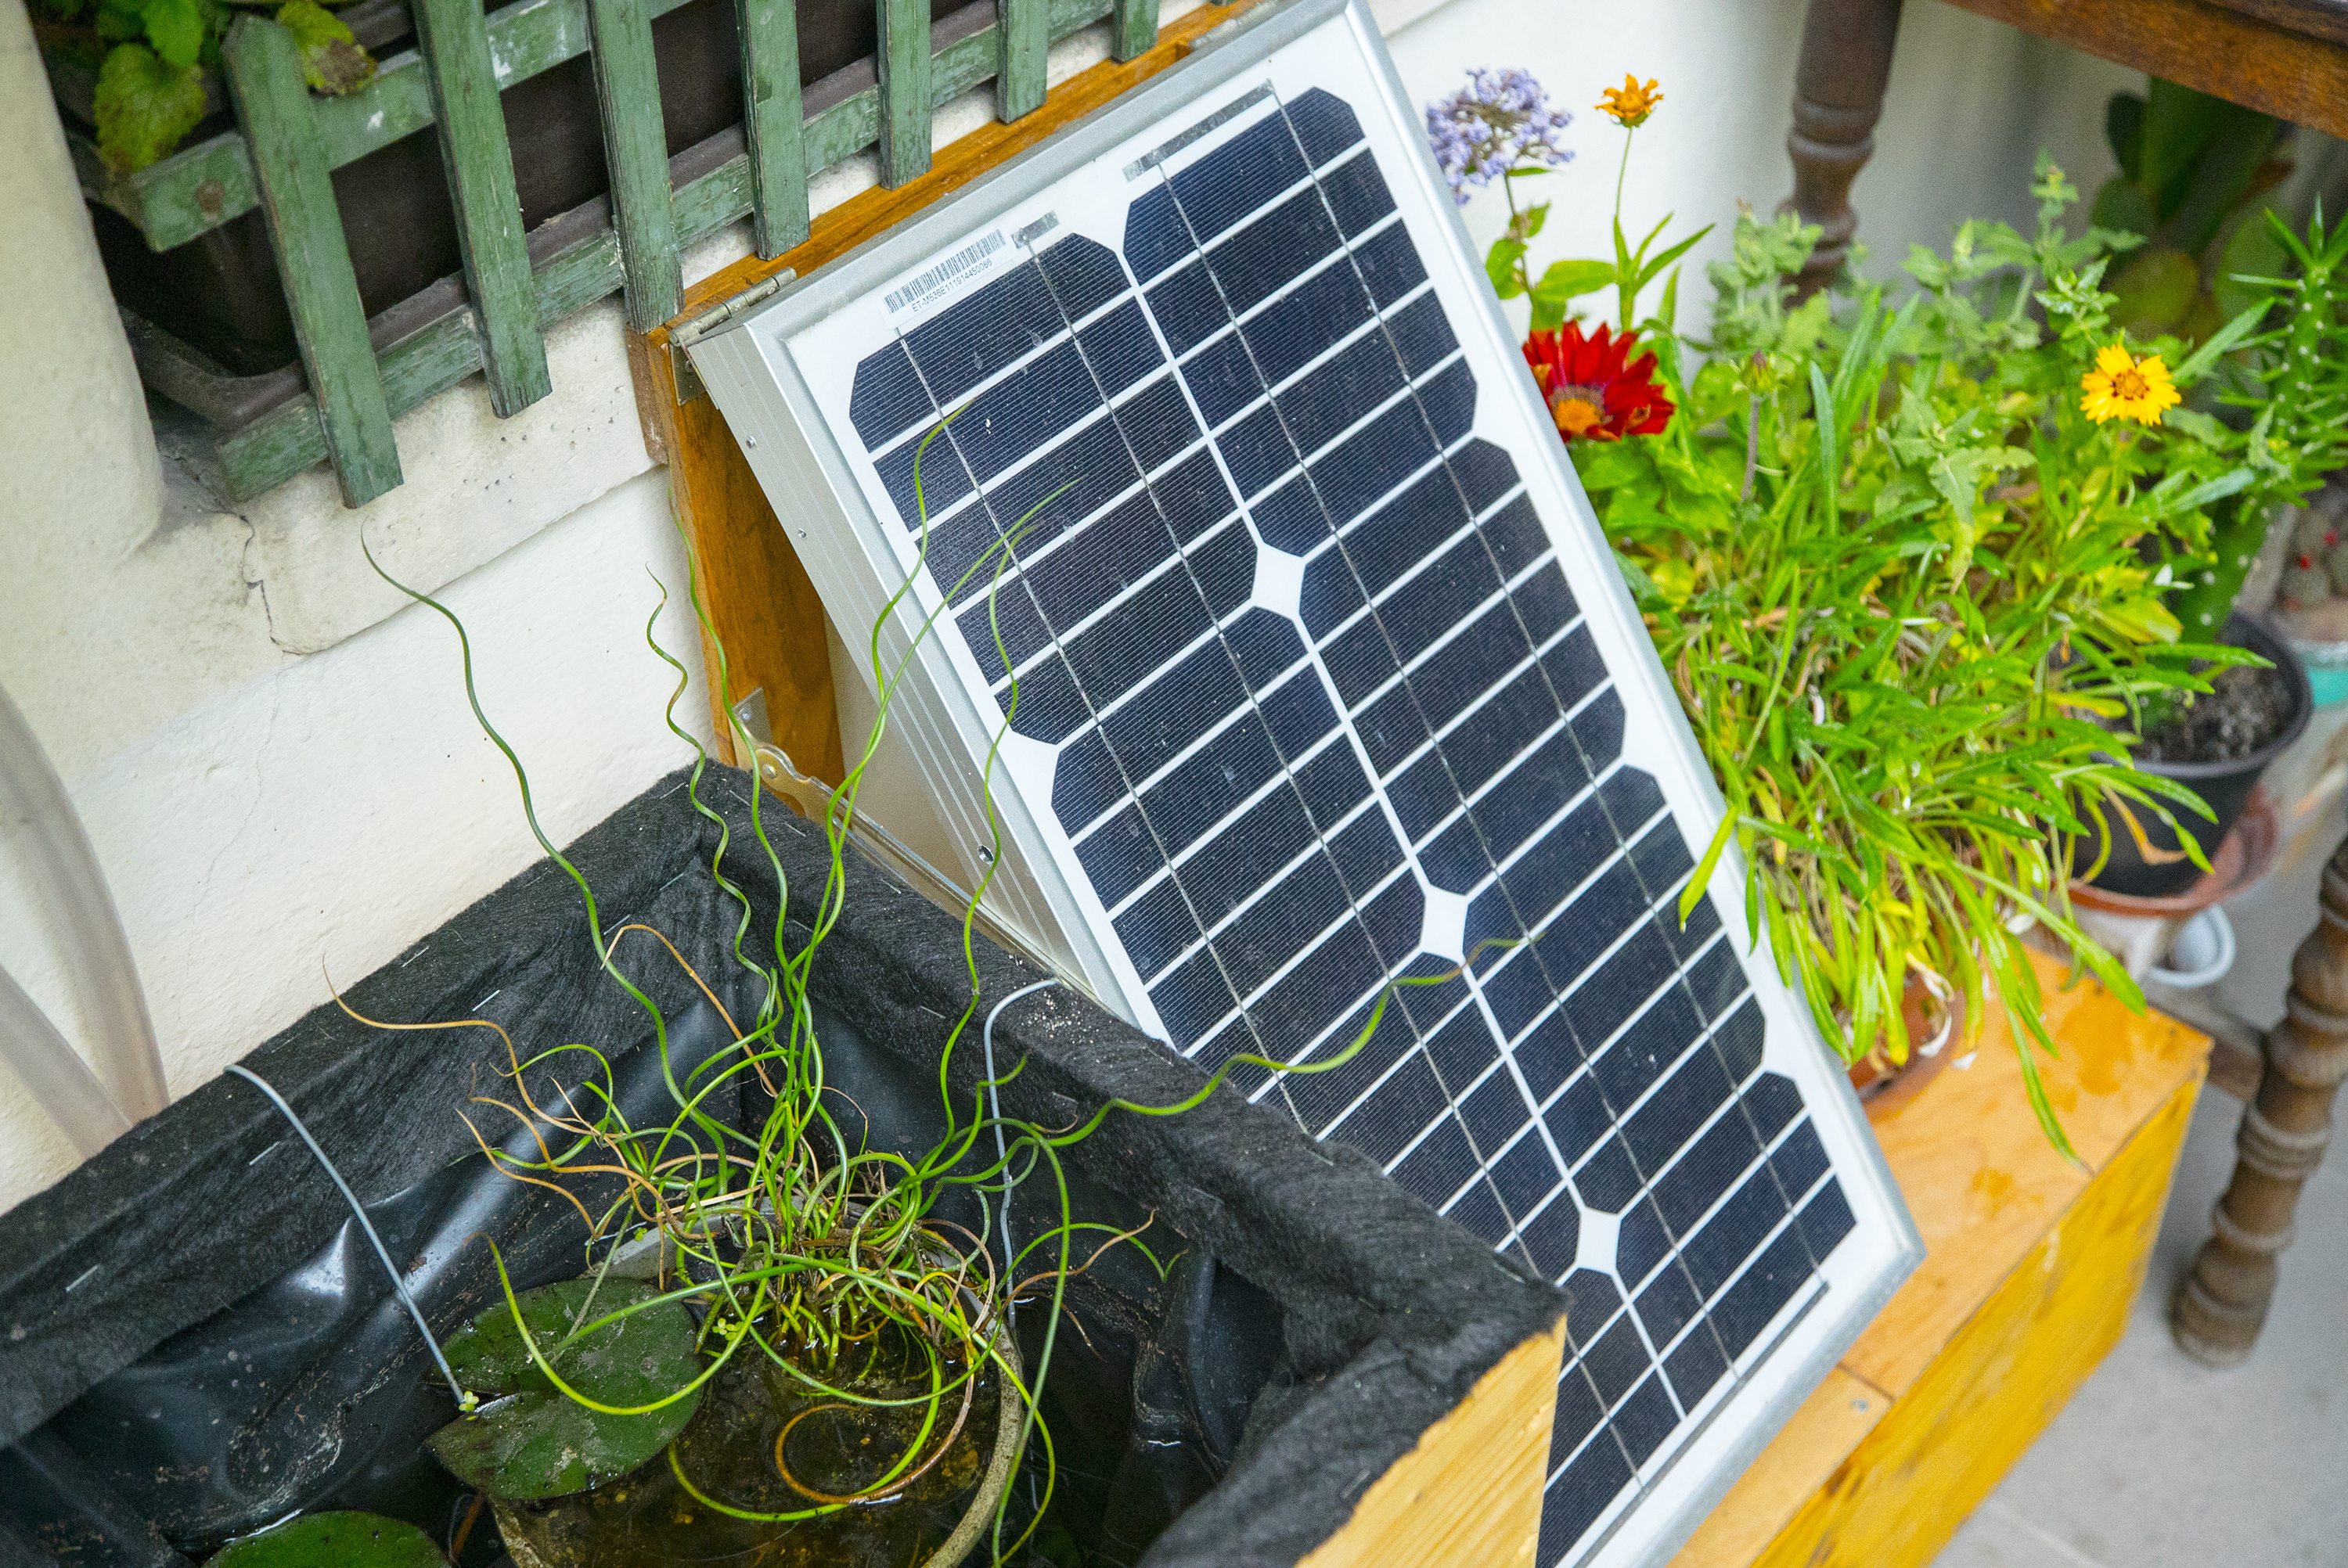 75 milliárd forint támogatást ad a kormány otthoni napelemek telepítésére